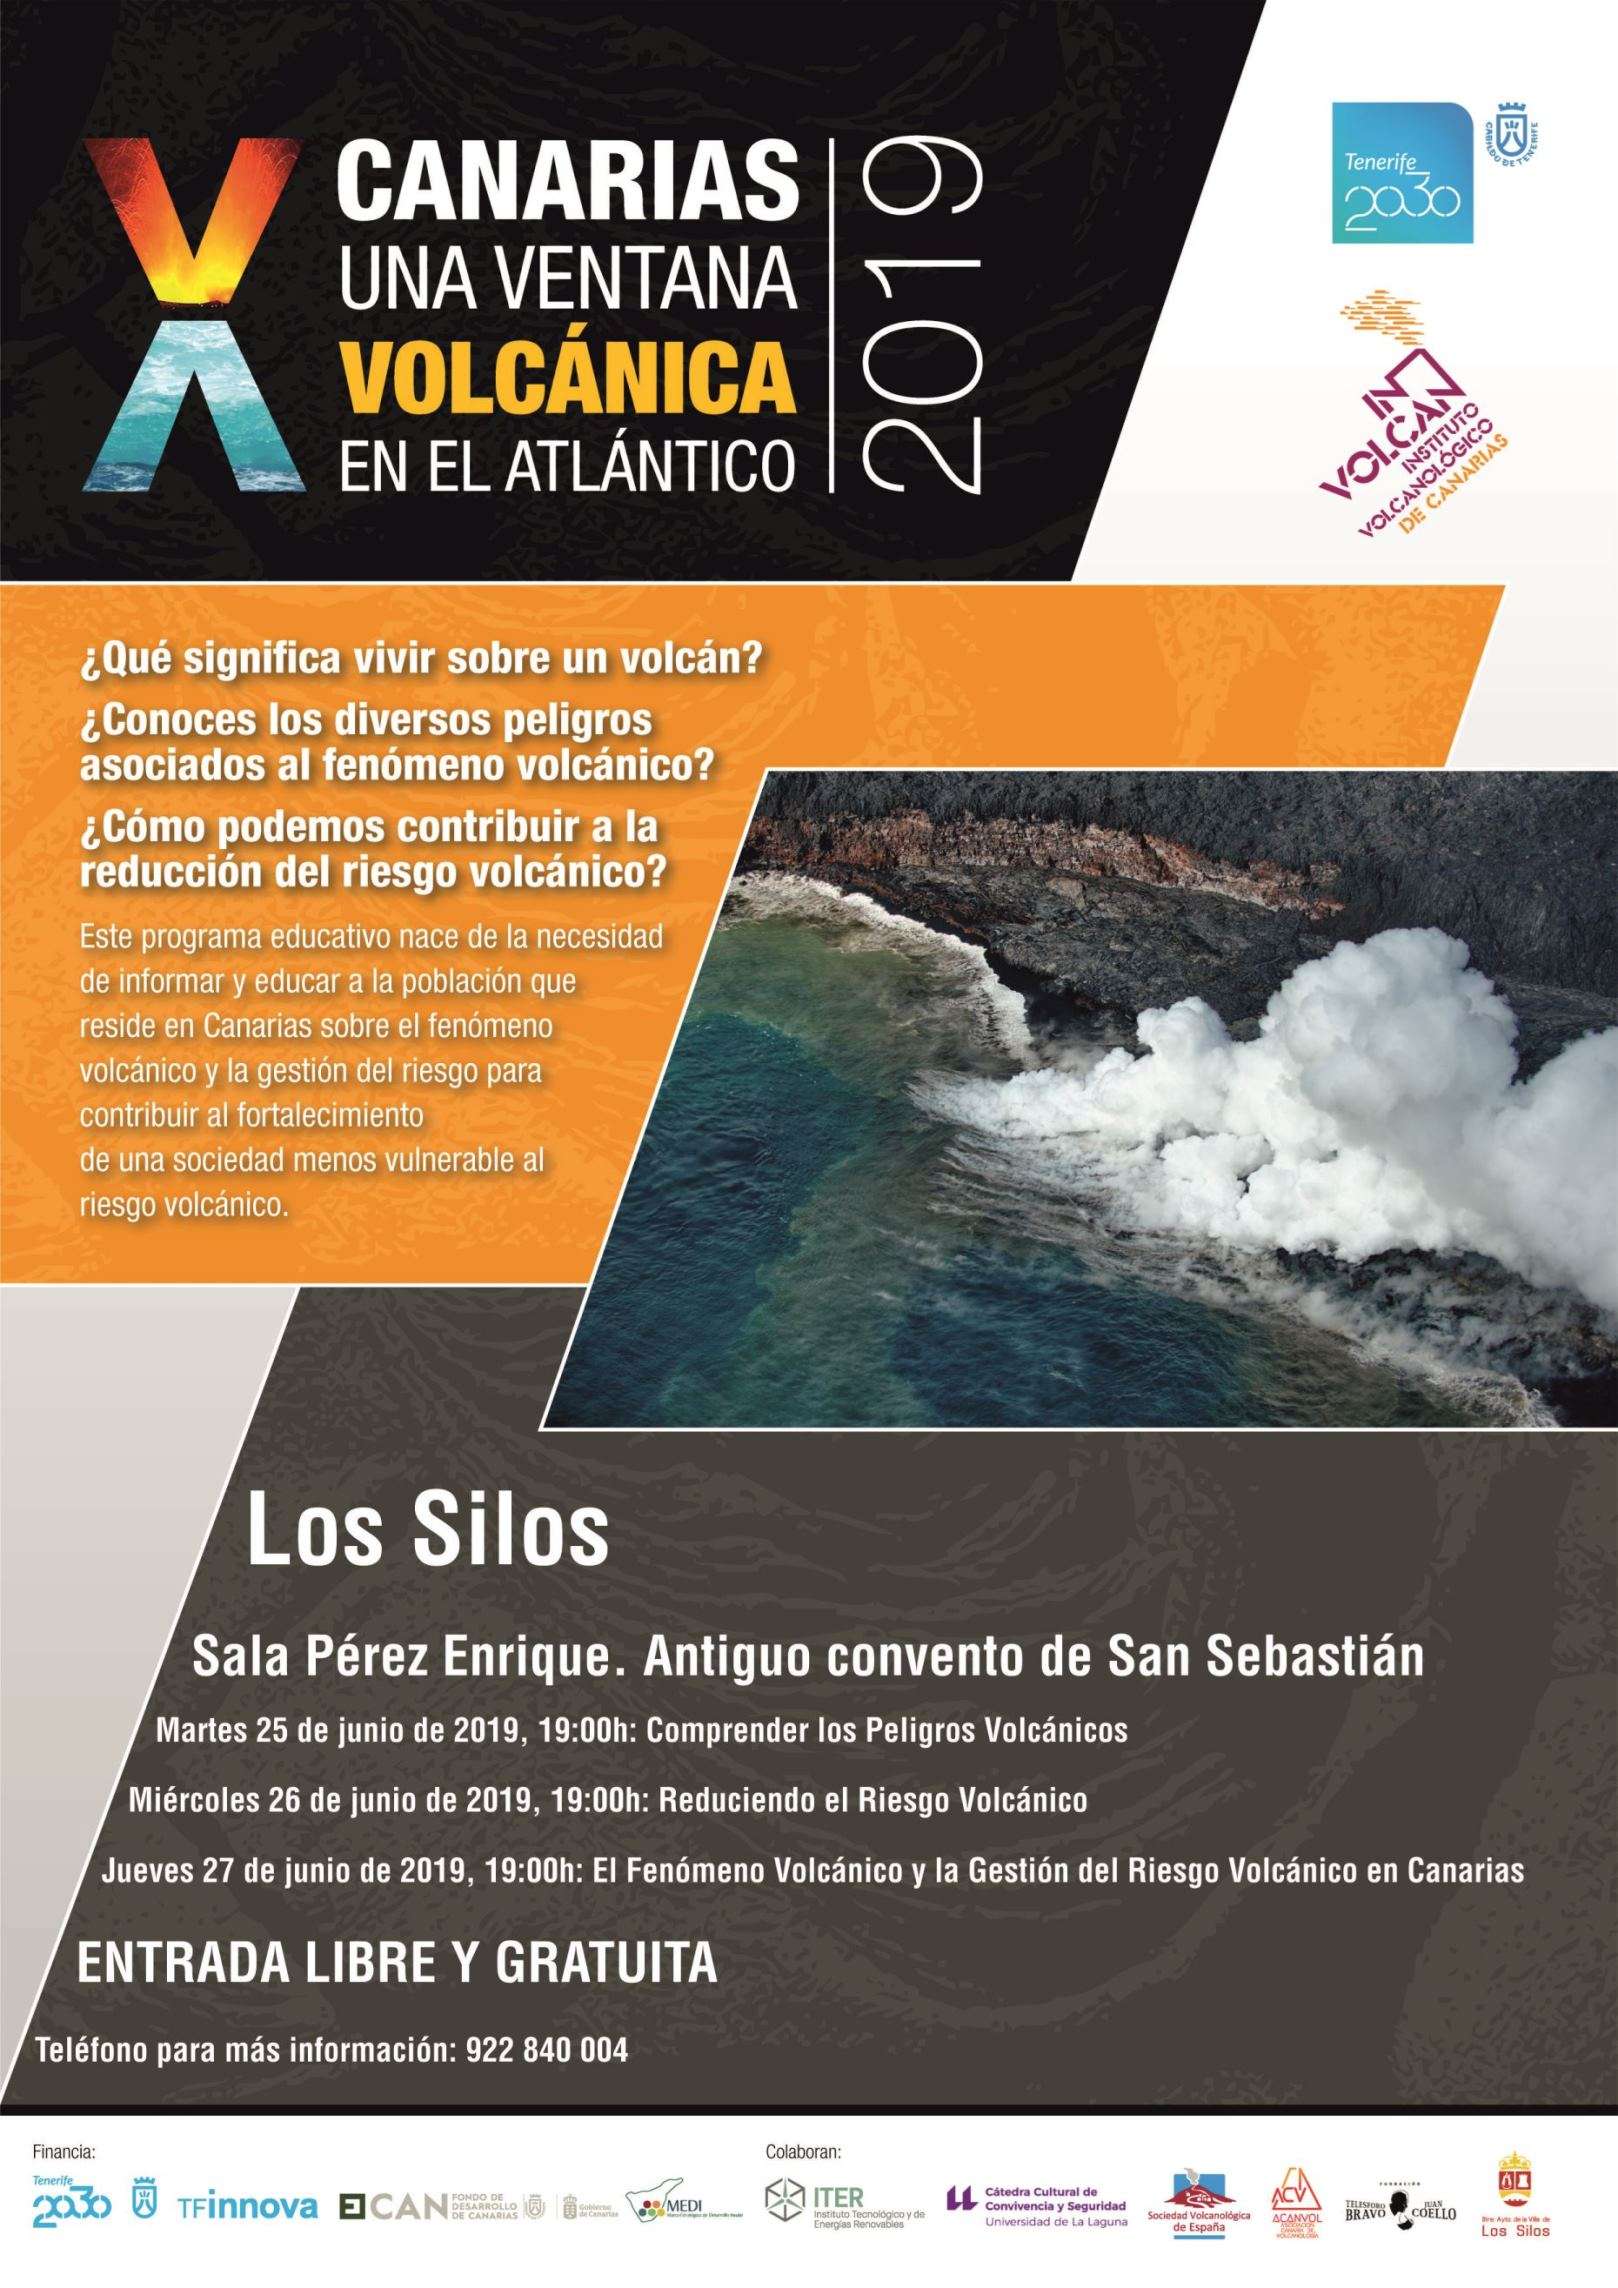 La iniciativa del Involcan sobre el riesgo volcanológico es promovida por el área Tenerife 2030 del Cabildo y la DGSE del Gobierno de Canarias